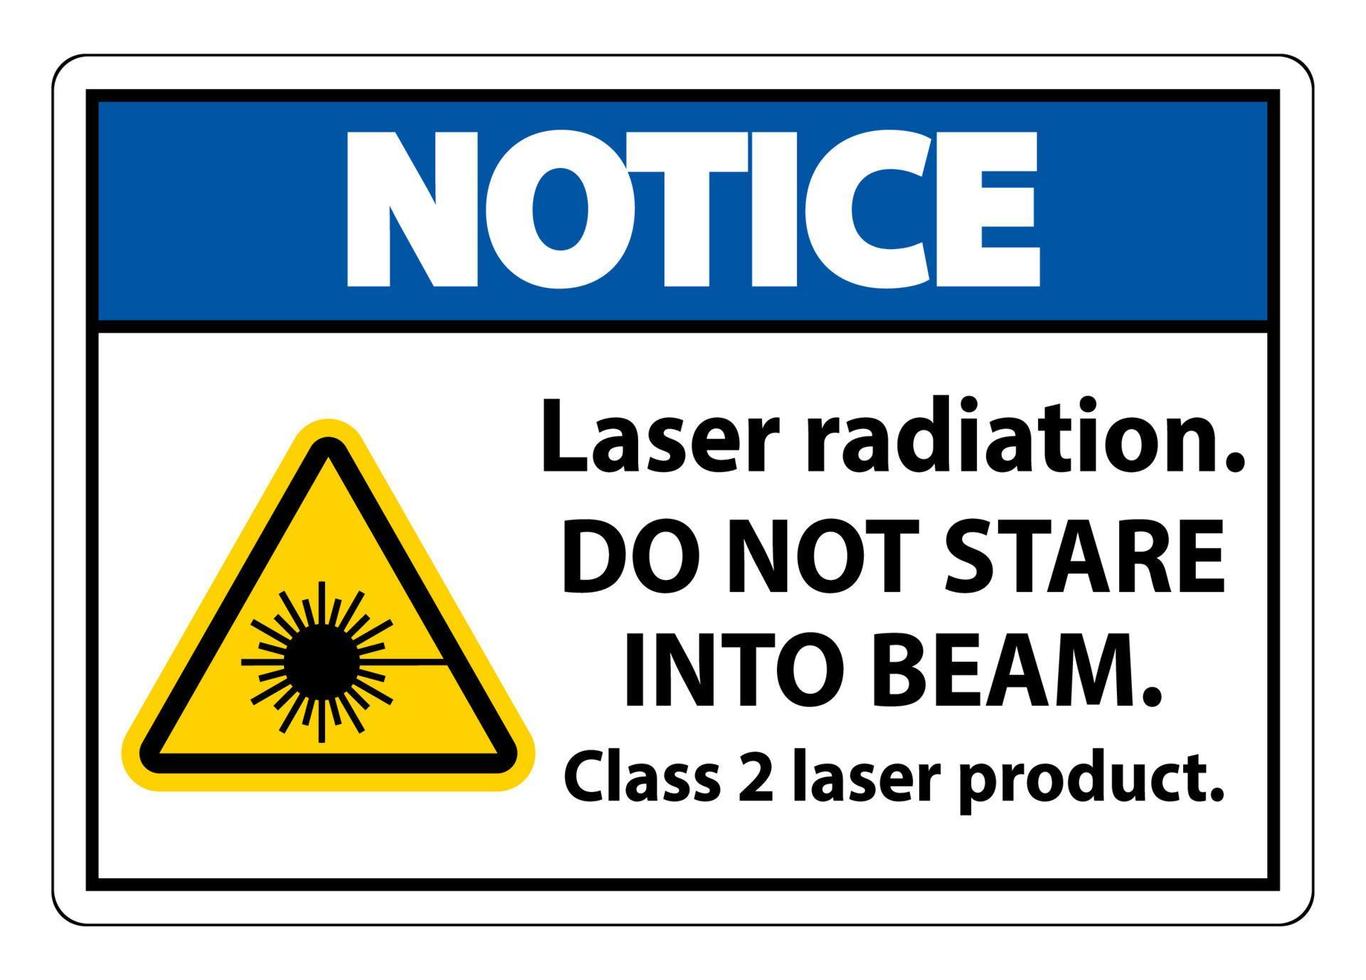 Beachten Sie die Laserstrahlung, starren Sie nicht in den Strahl, Laserproduktzeichen der Klasse 2 auf weißem Hintergrund vektor